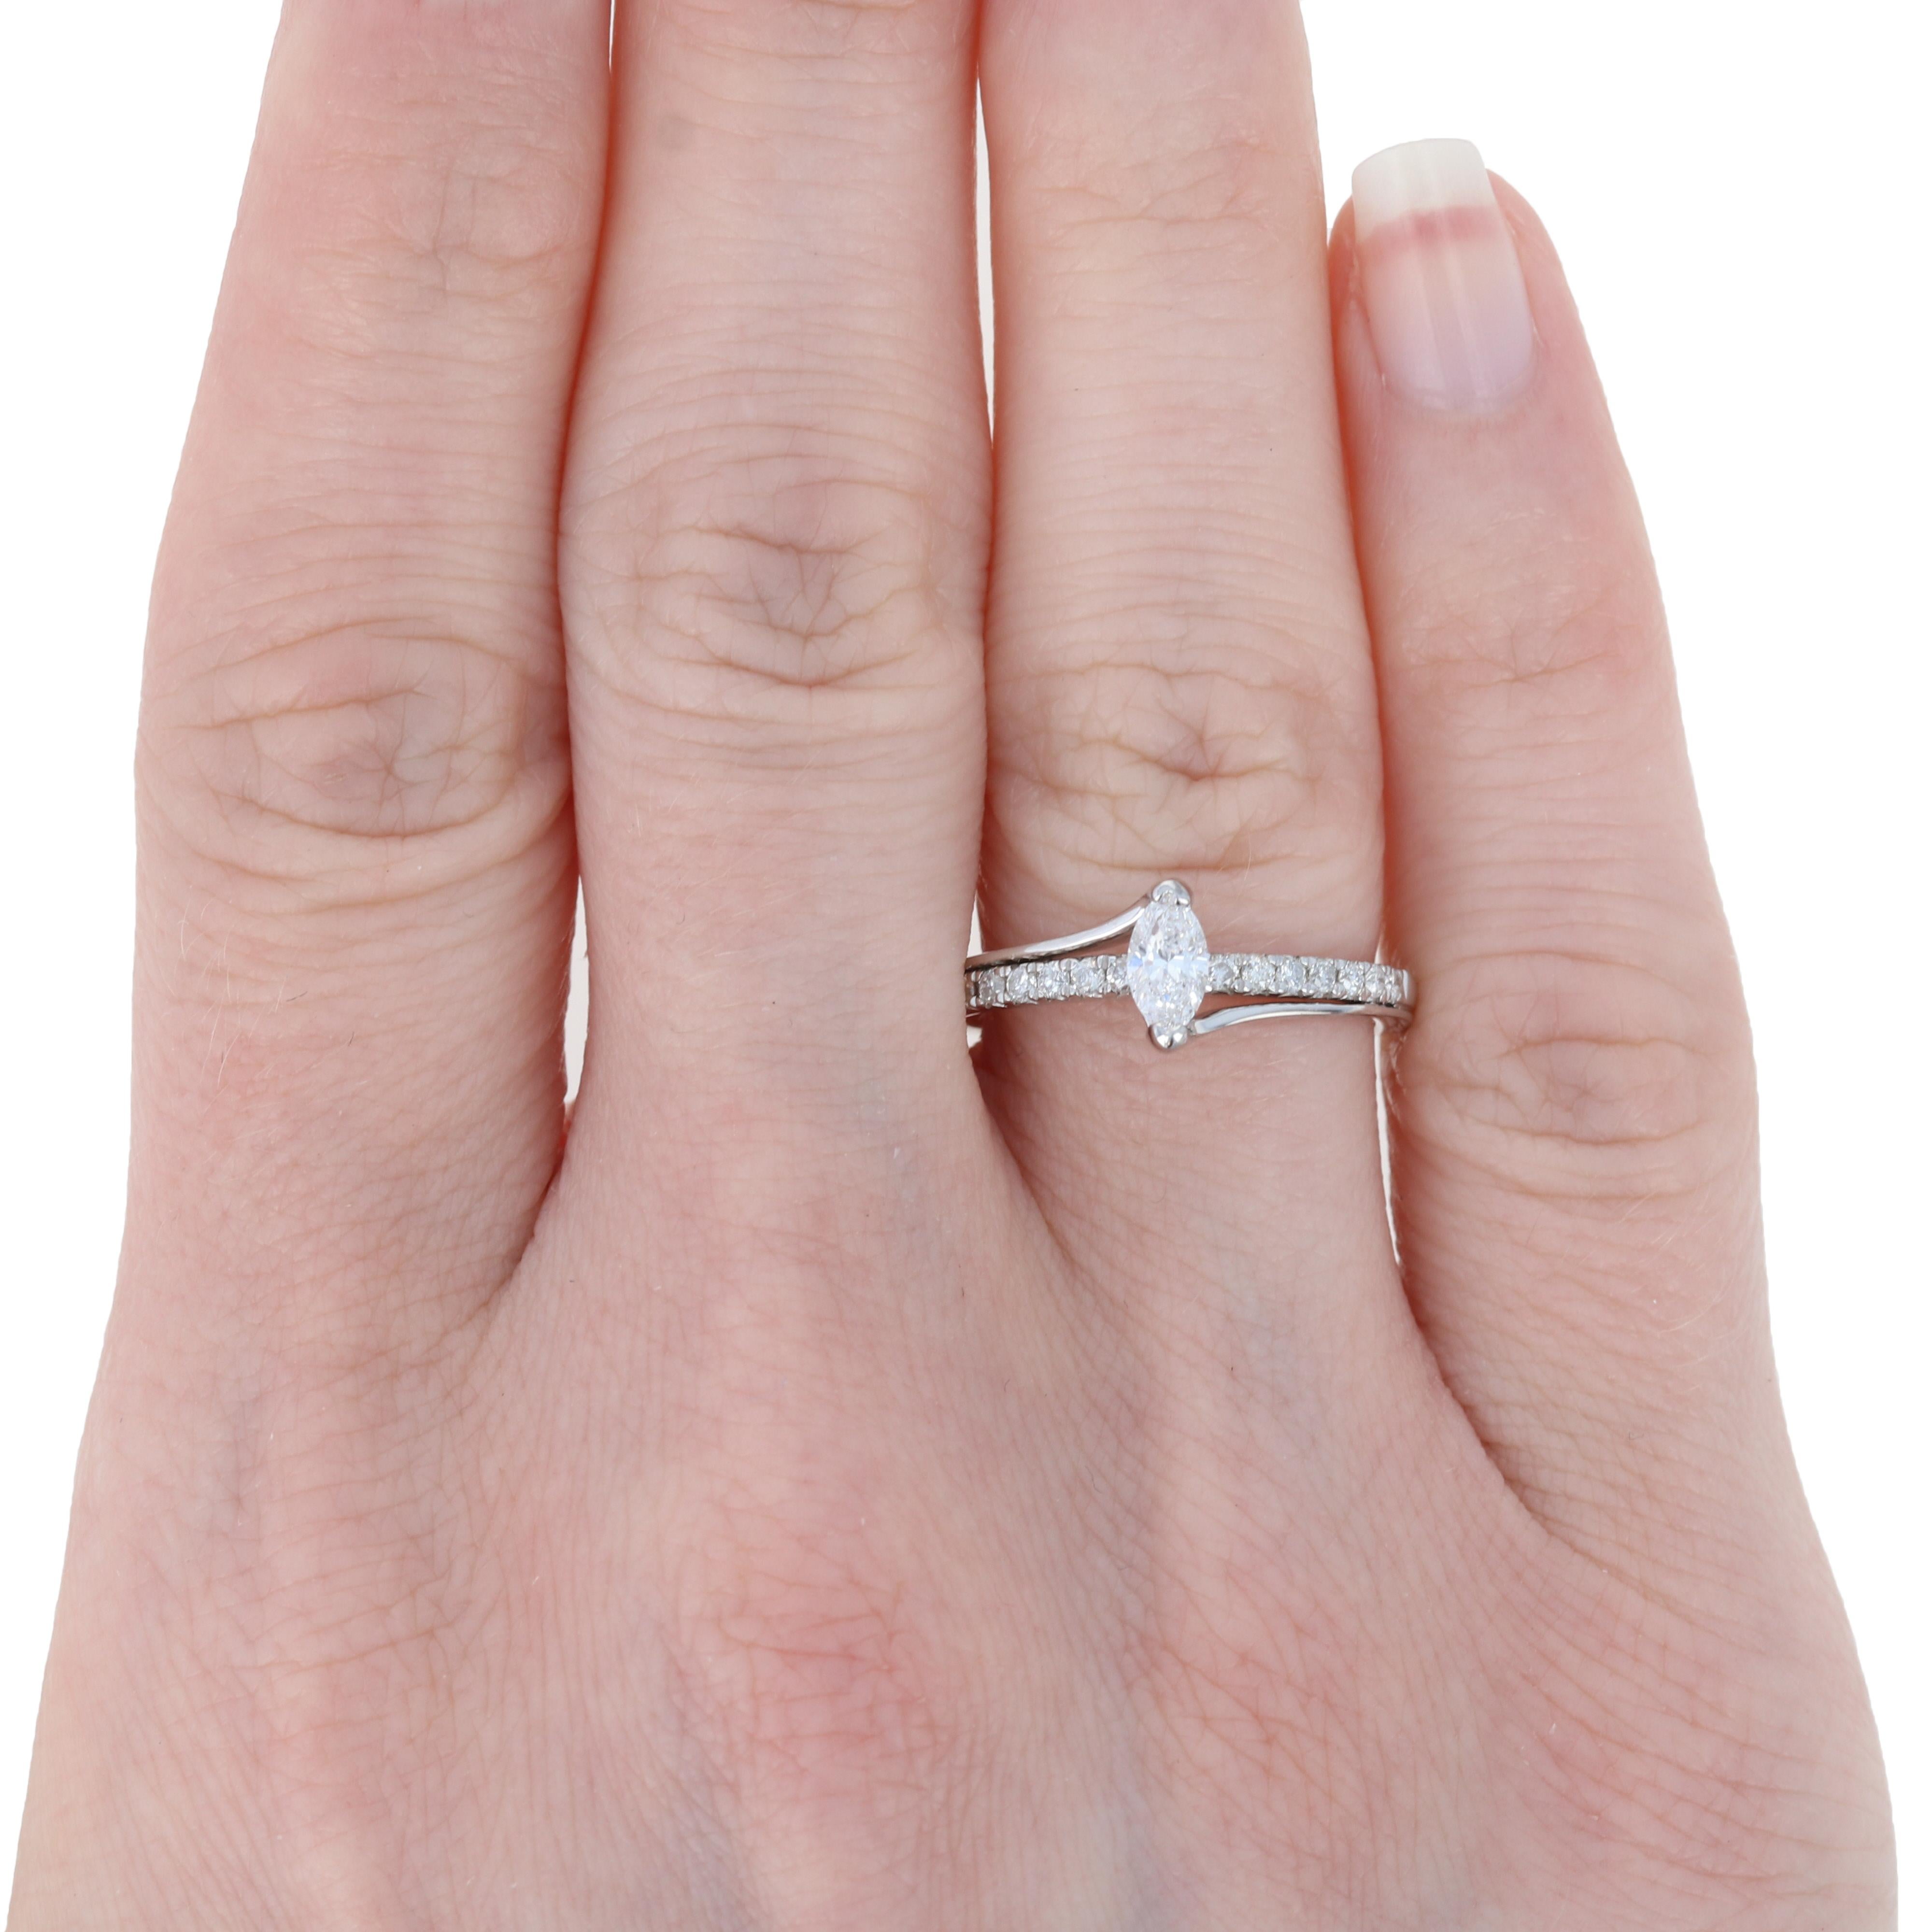 Verblüffen Sie Ihre zukünftige Braut, wenn Sie ihr einen Antrag mit diesem atemberaubenden Diamant-Verlobungsring machen! Dieser NEUE Ring aus 14 Karat Weißgold im raffinierten Bypass-Stil präsentiert einen Solitär mit einem Gesamtgewicht von 0,31